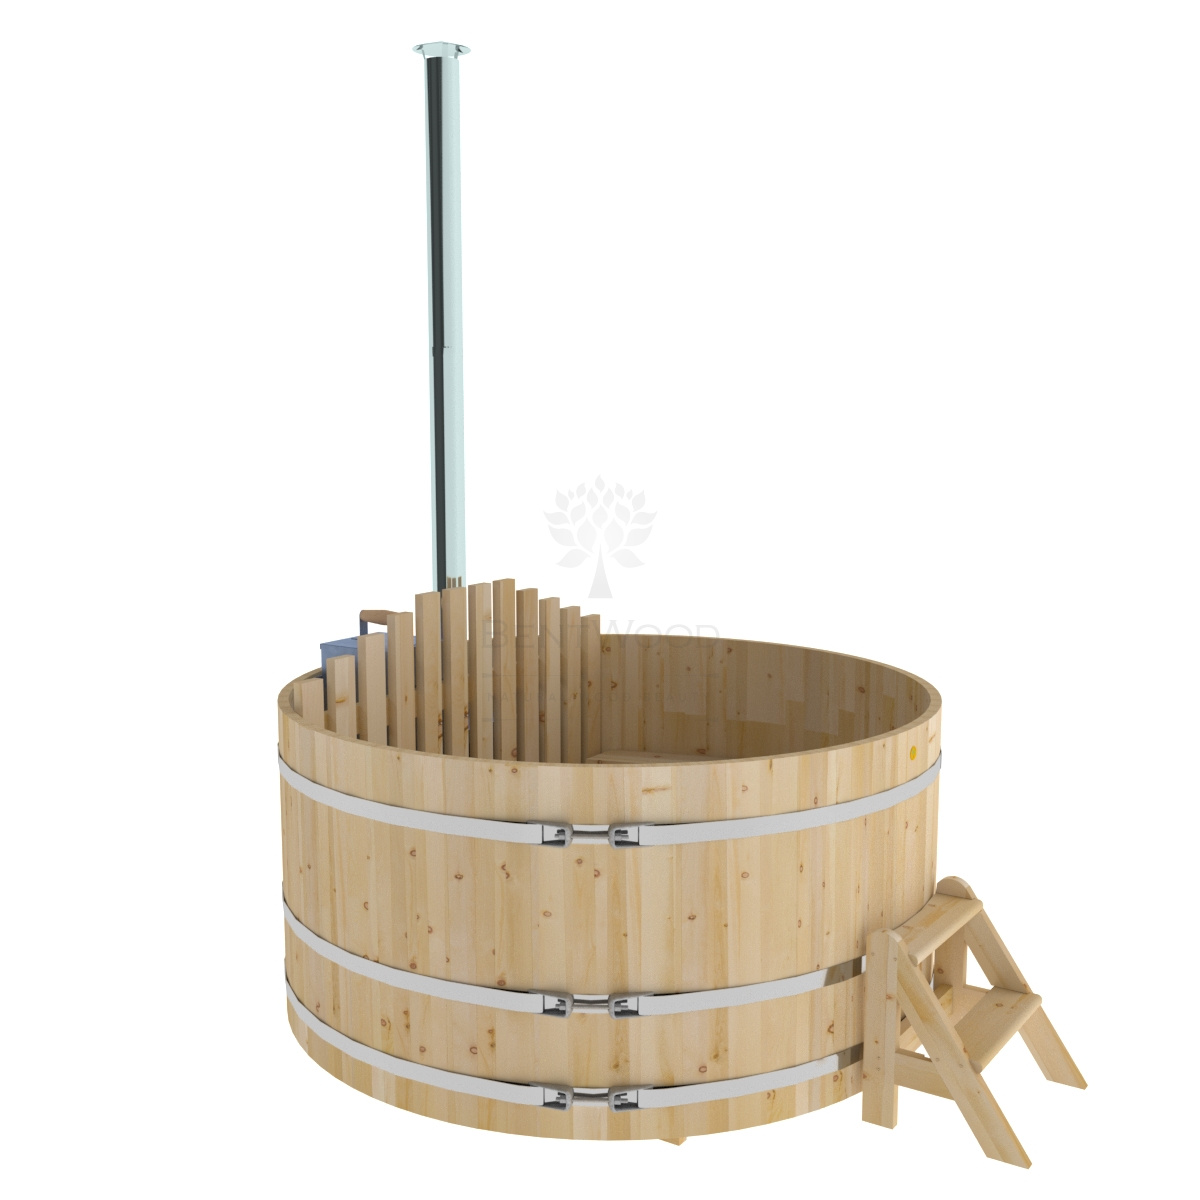 Купель с подогревом из кедра D=2.1 с внутренней печкой на дровах. (Фурако)